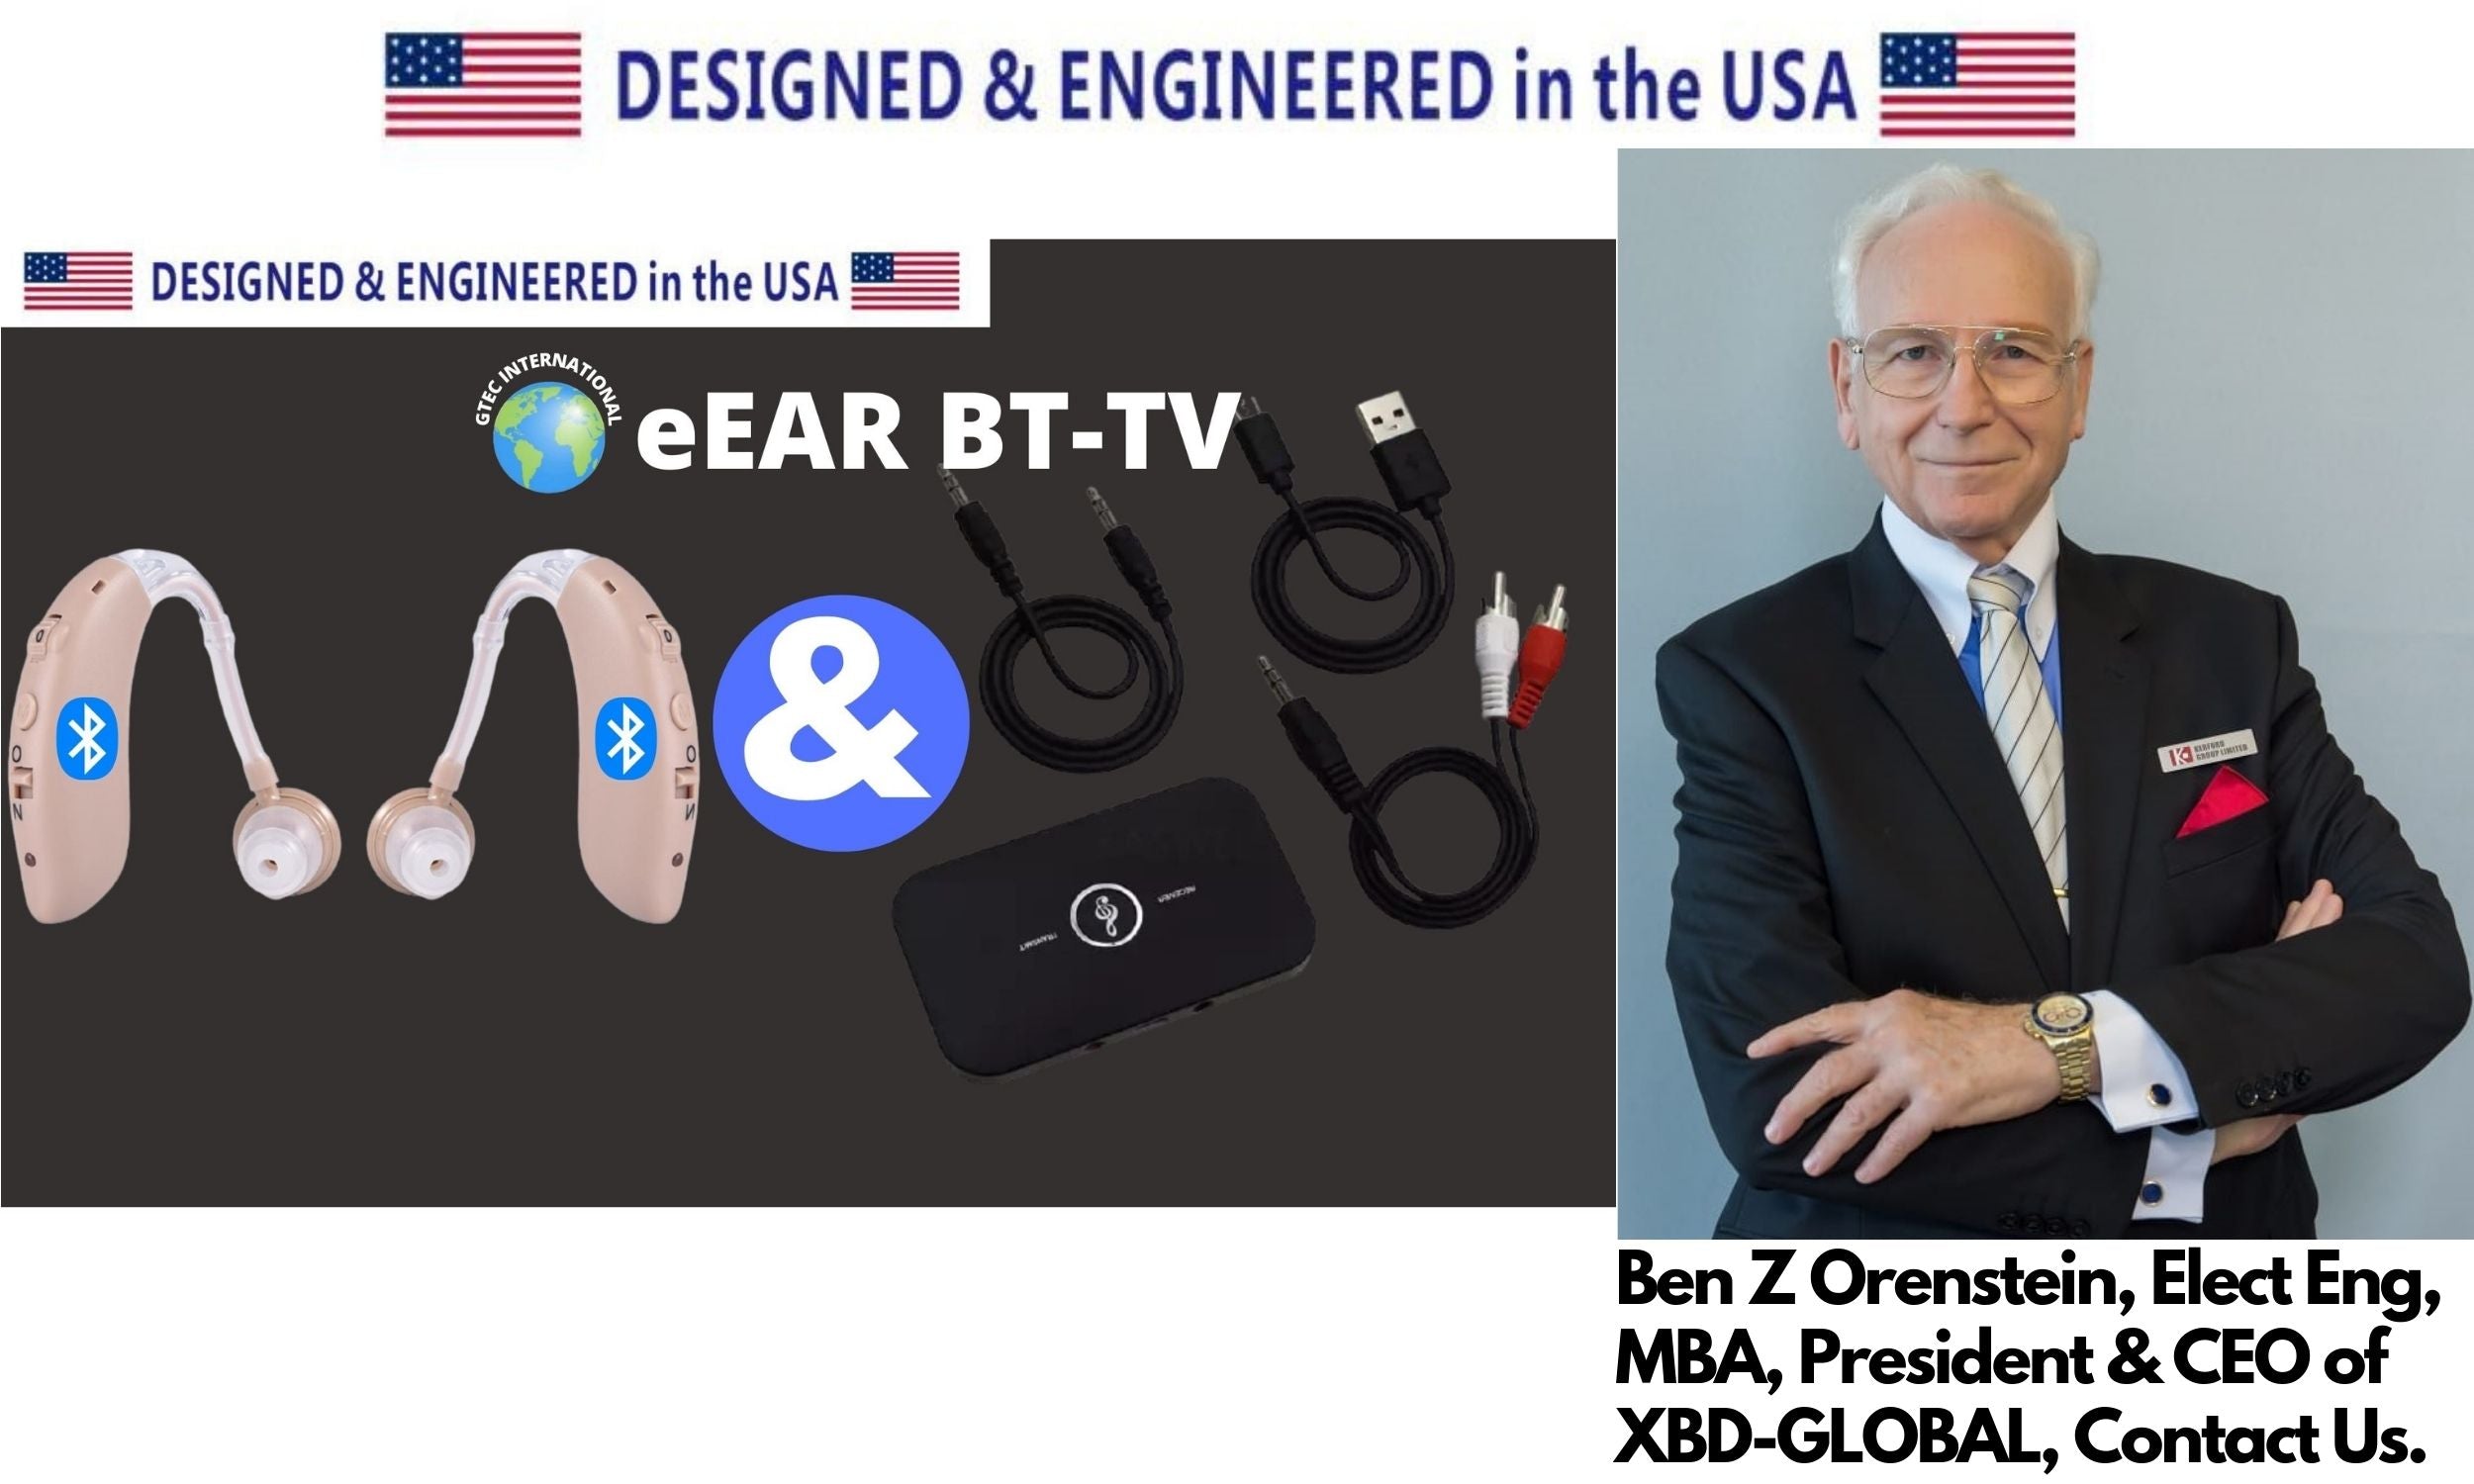 eEAR Bluetooth TV System eEAR BT-TV-02 Paar Die perfekte Lösung zum Fernsehen für Hörgeräteträger und Hörgeschädigte. Entworfen und hergestellt in den USA